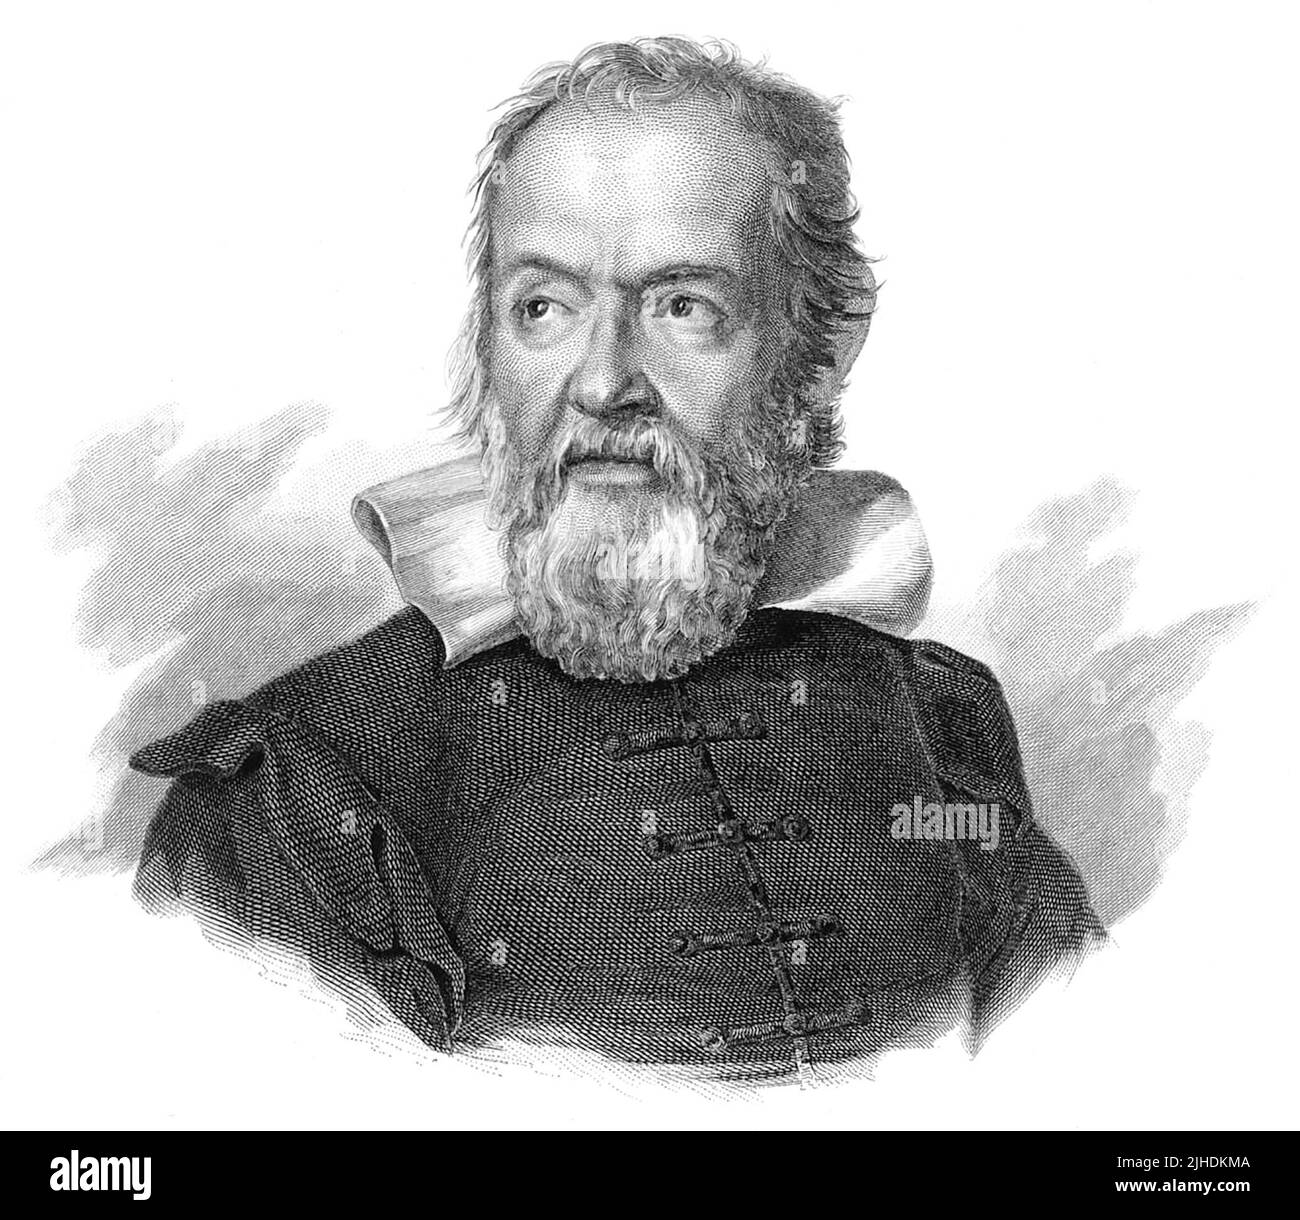 Galileo di Vincenzo Bonaiuti de' Galilei, comúnmente conocido simplemente como Galileo (1564-1642), fue un astrónomo, físico e ingeniero italiano, a veces descrito como un polimata, de la ciudad de Pisa. Galileo ha sido llamado el 'padre' de la astronomía observacional, la física moderna, el método científico y la ciencia moderna. Foto de stock